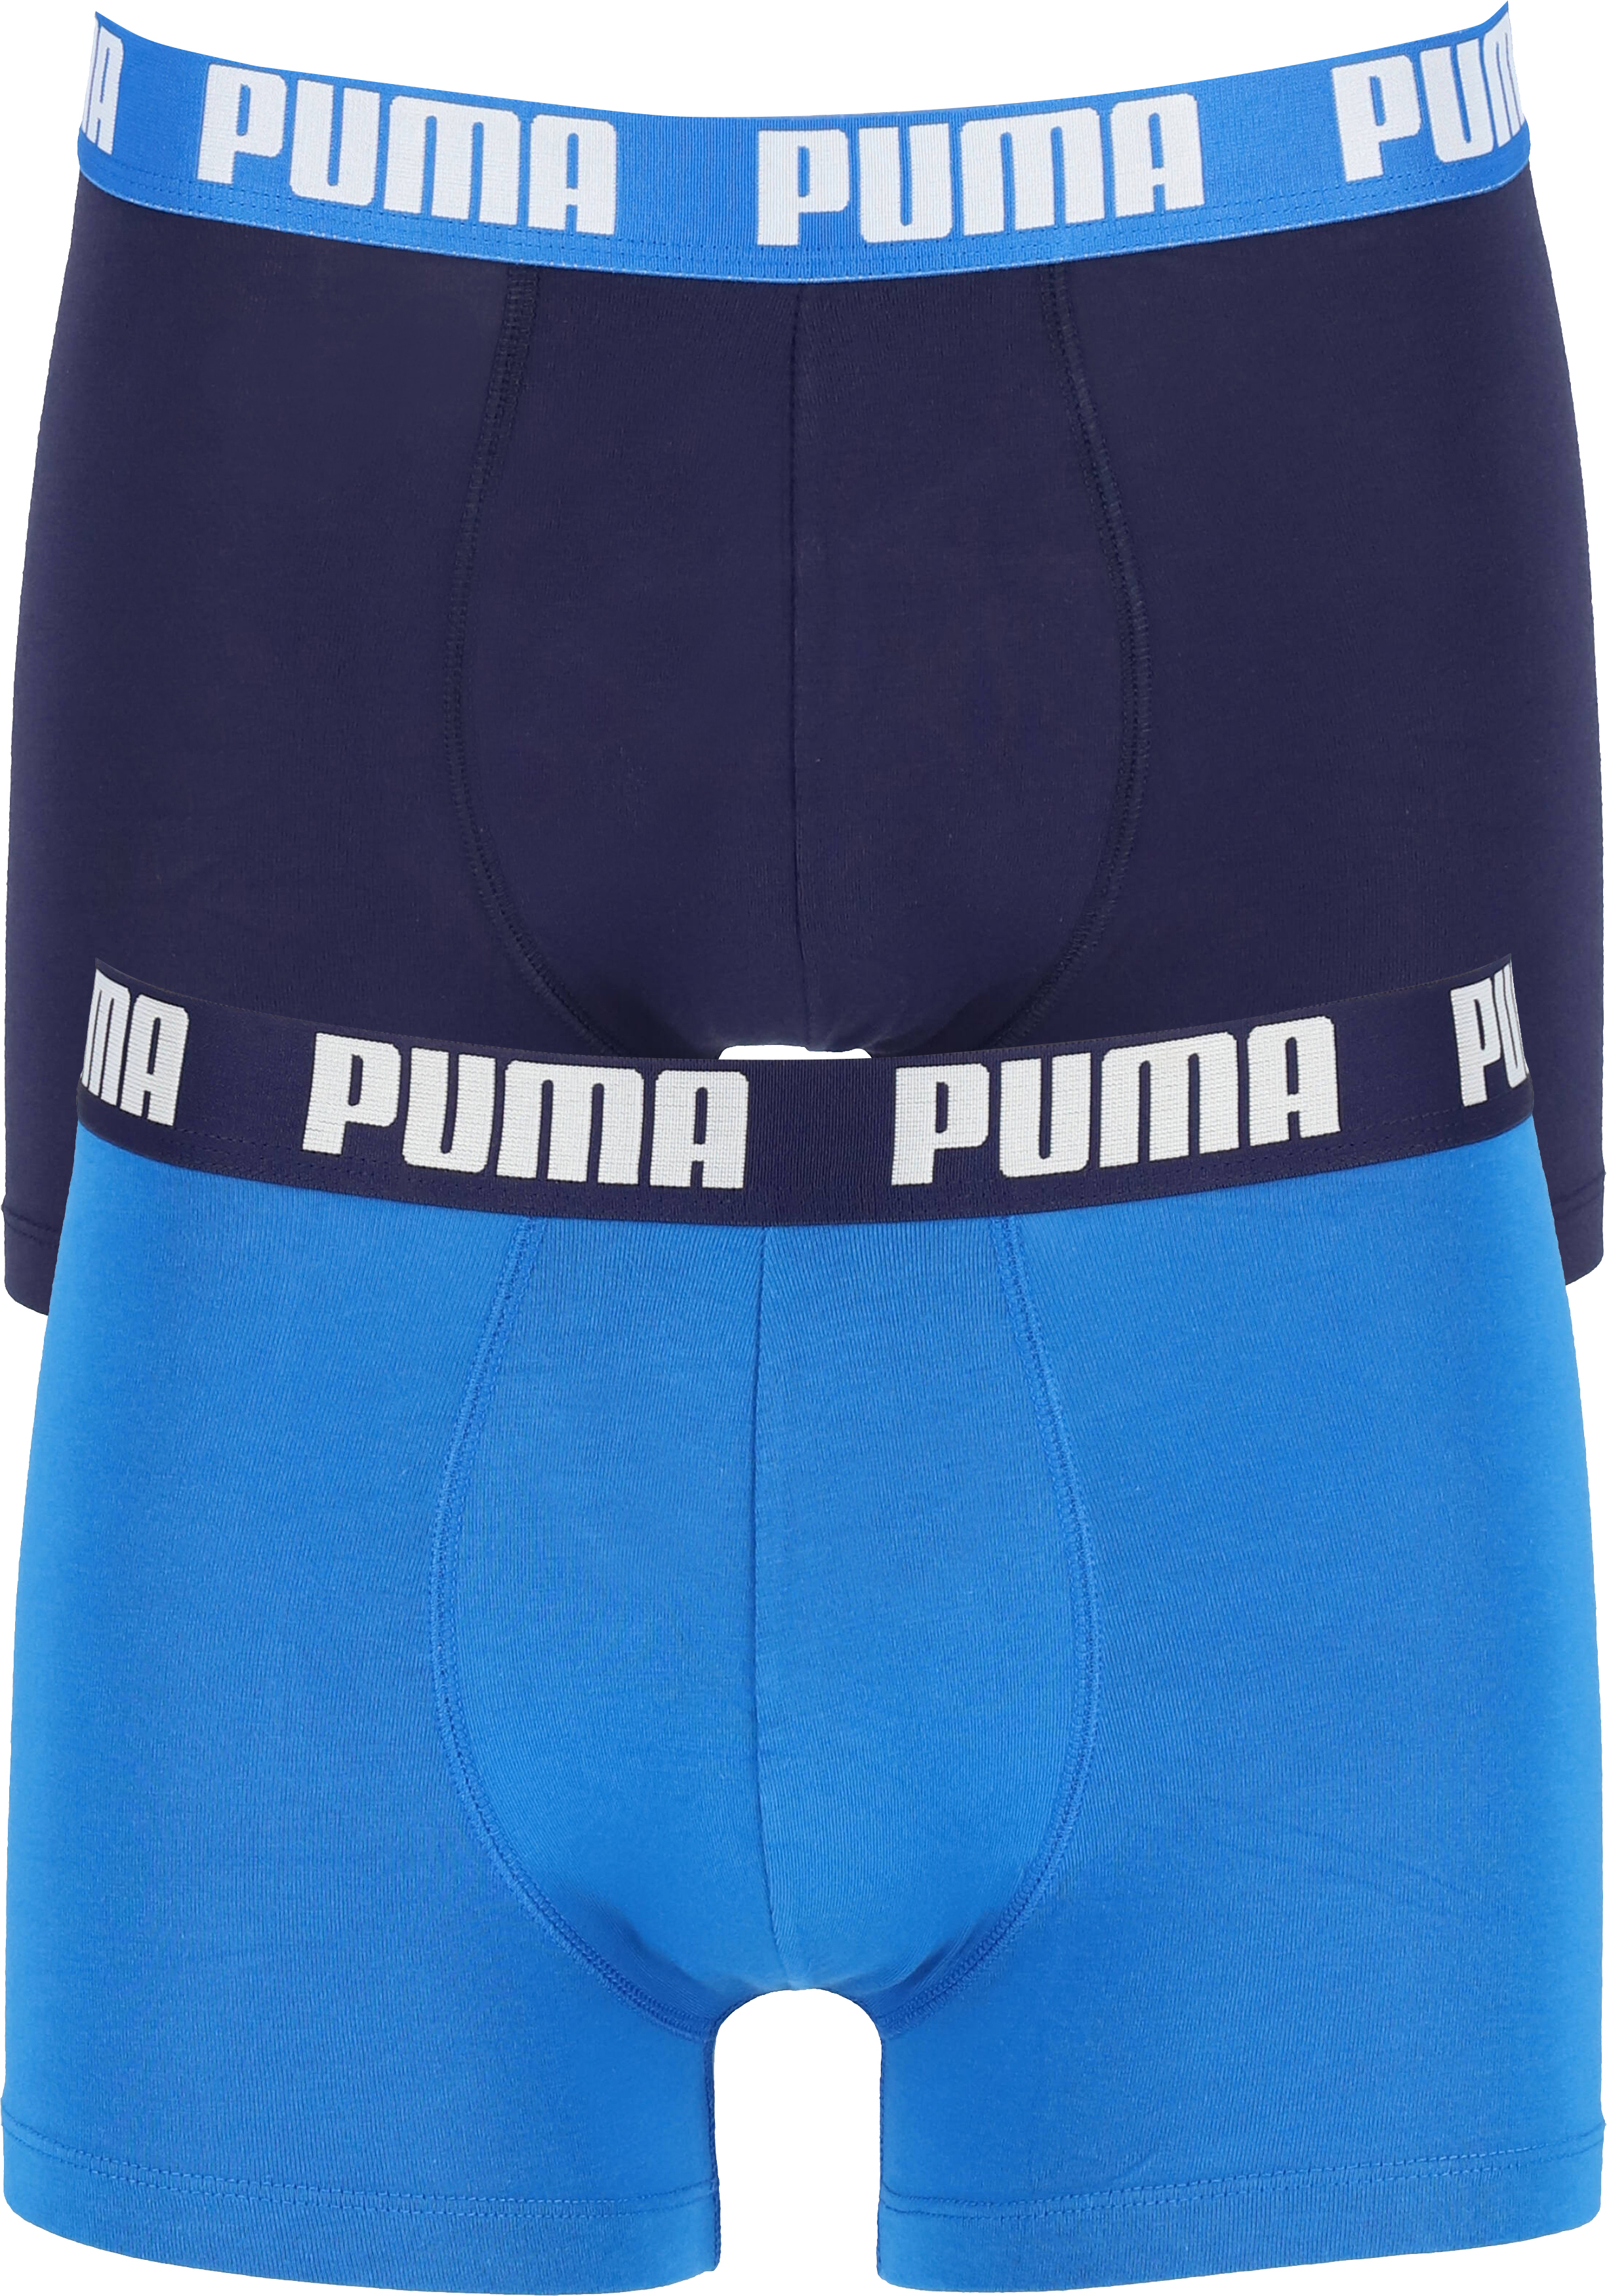 segment Uitreiken dubbellaag Puma Basic Boxer heren (2-pack), licht- en donkerblauw - Shop de nieuwste  voorjaarsmode